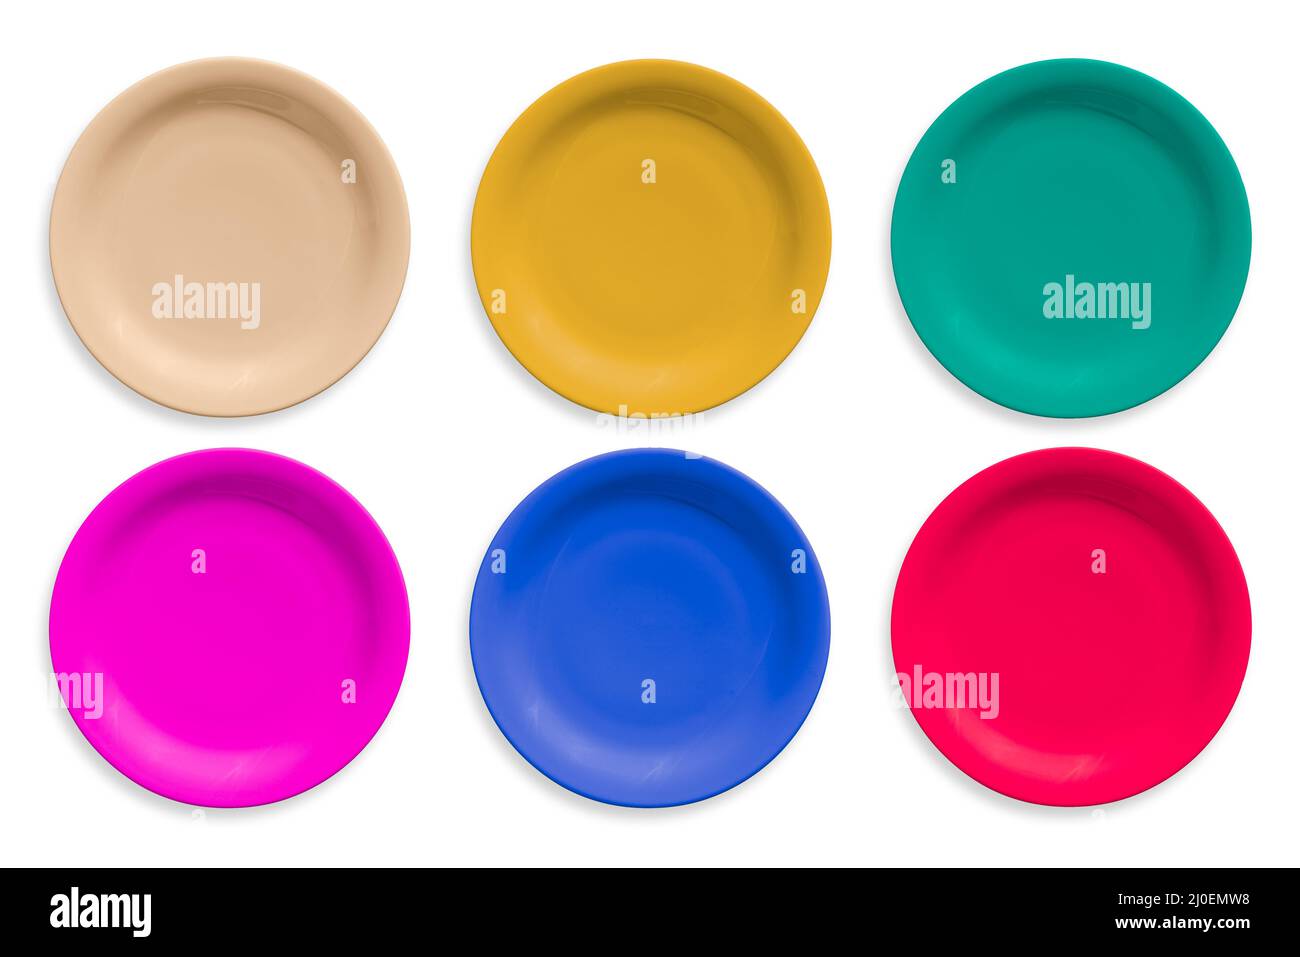 Plaques rondes en céramique de couleur isolées sur fond blanc Banque D'Images